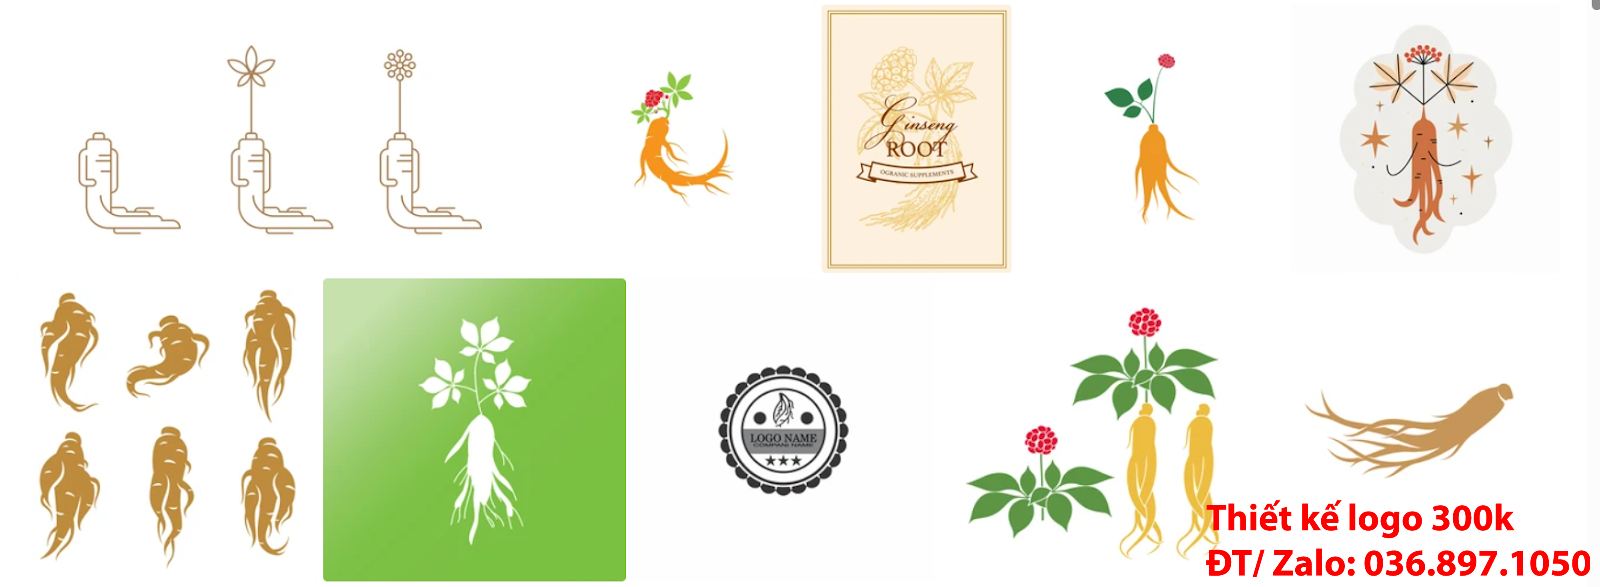 Công ty nhận làm các Mẫu Thiết Kế Logo nhân sâm đẹp giá rẻ chất lượng tại Tp Hồ Chí Minh